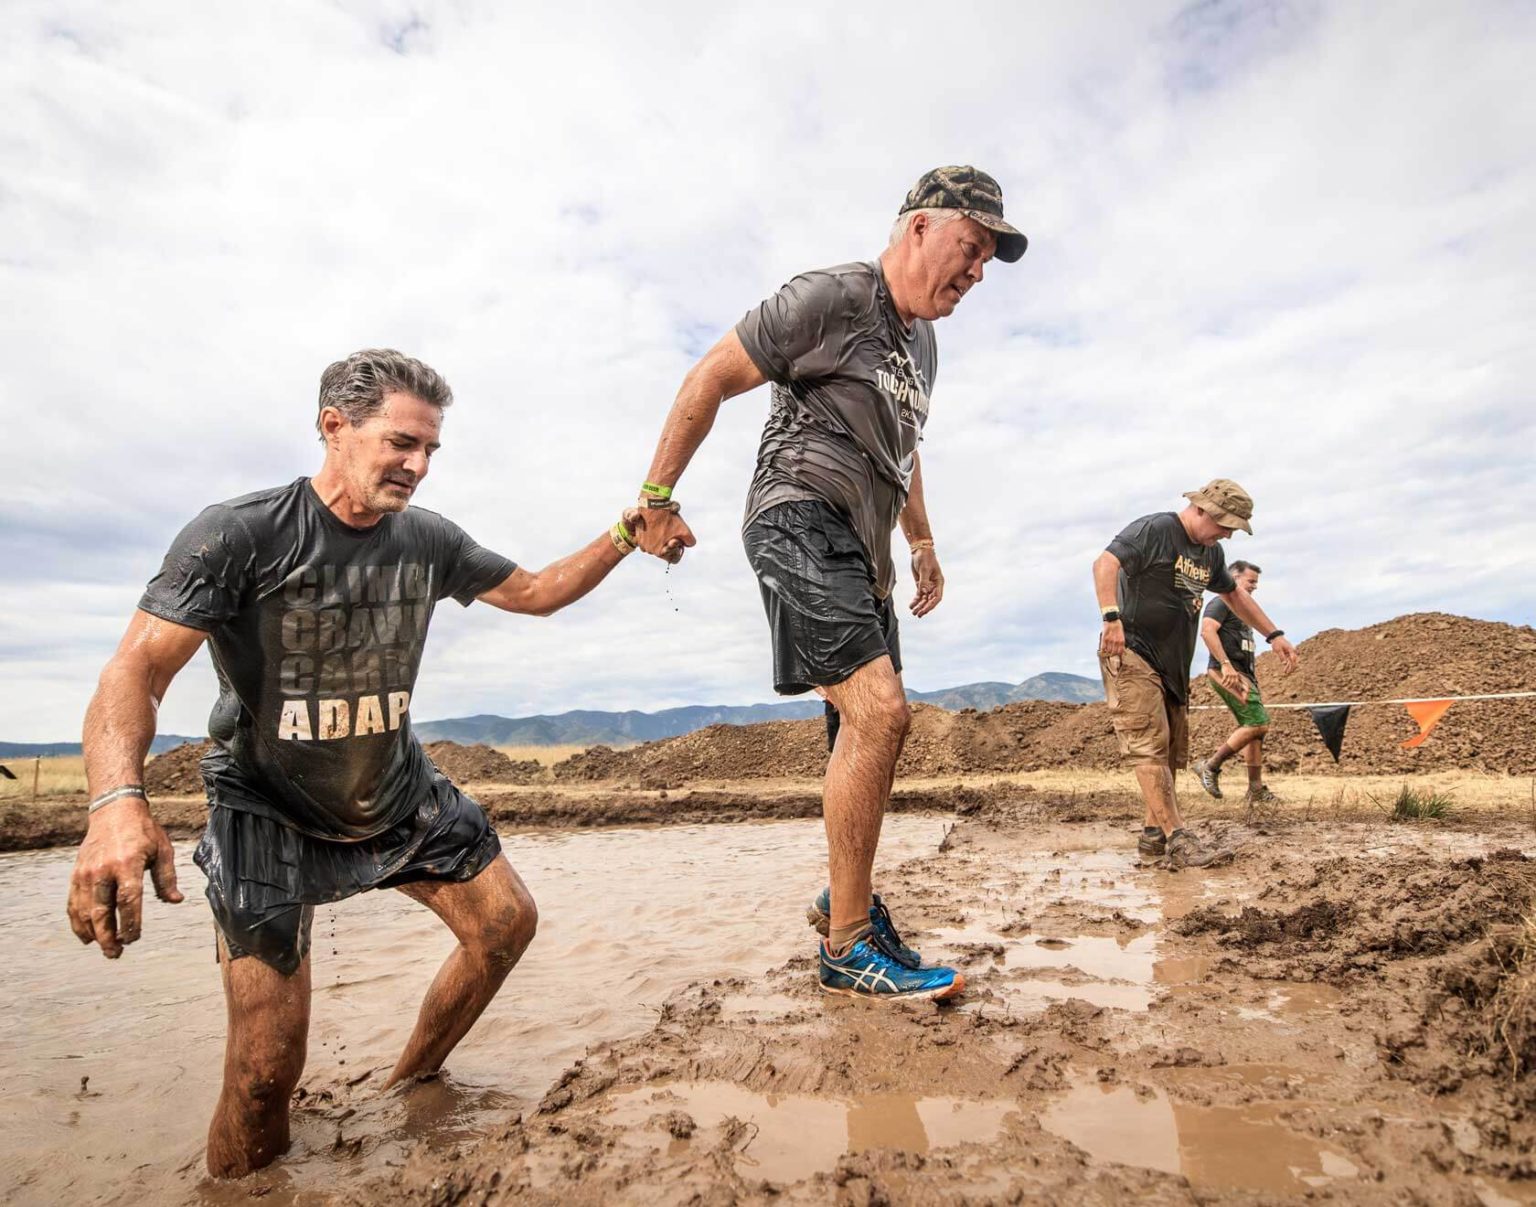 Colorado Mud Run Tough Mudder Colorado 2021 July 24 & 25, 2021